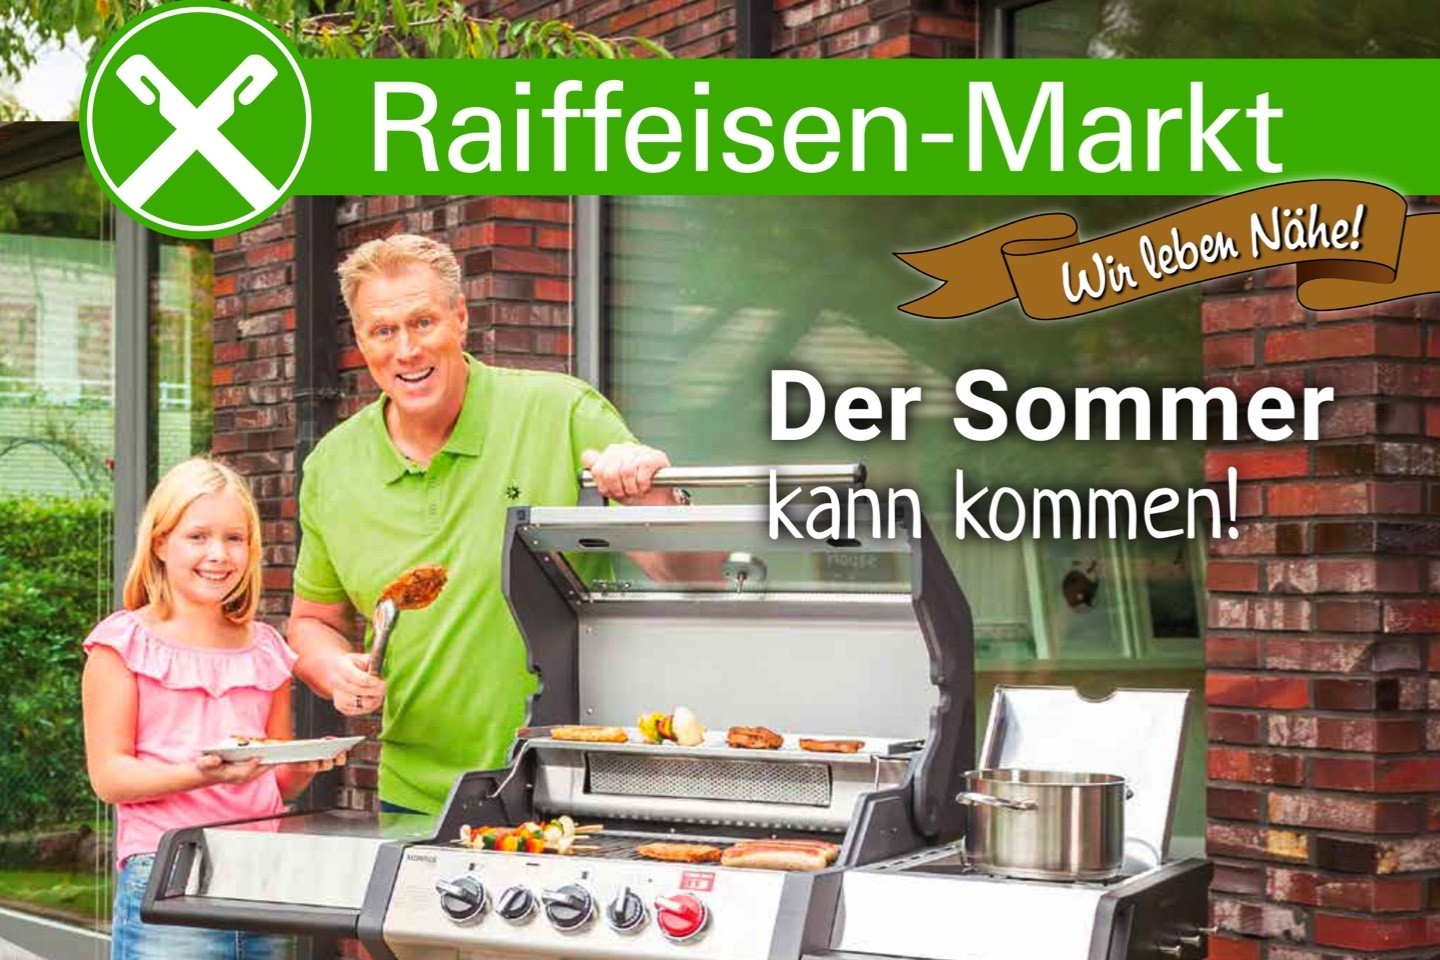 Raiffeisen-Markt,Sassenberg,Warendorf,Freckenhorst,Ennigerloh,April Prospekt,